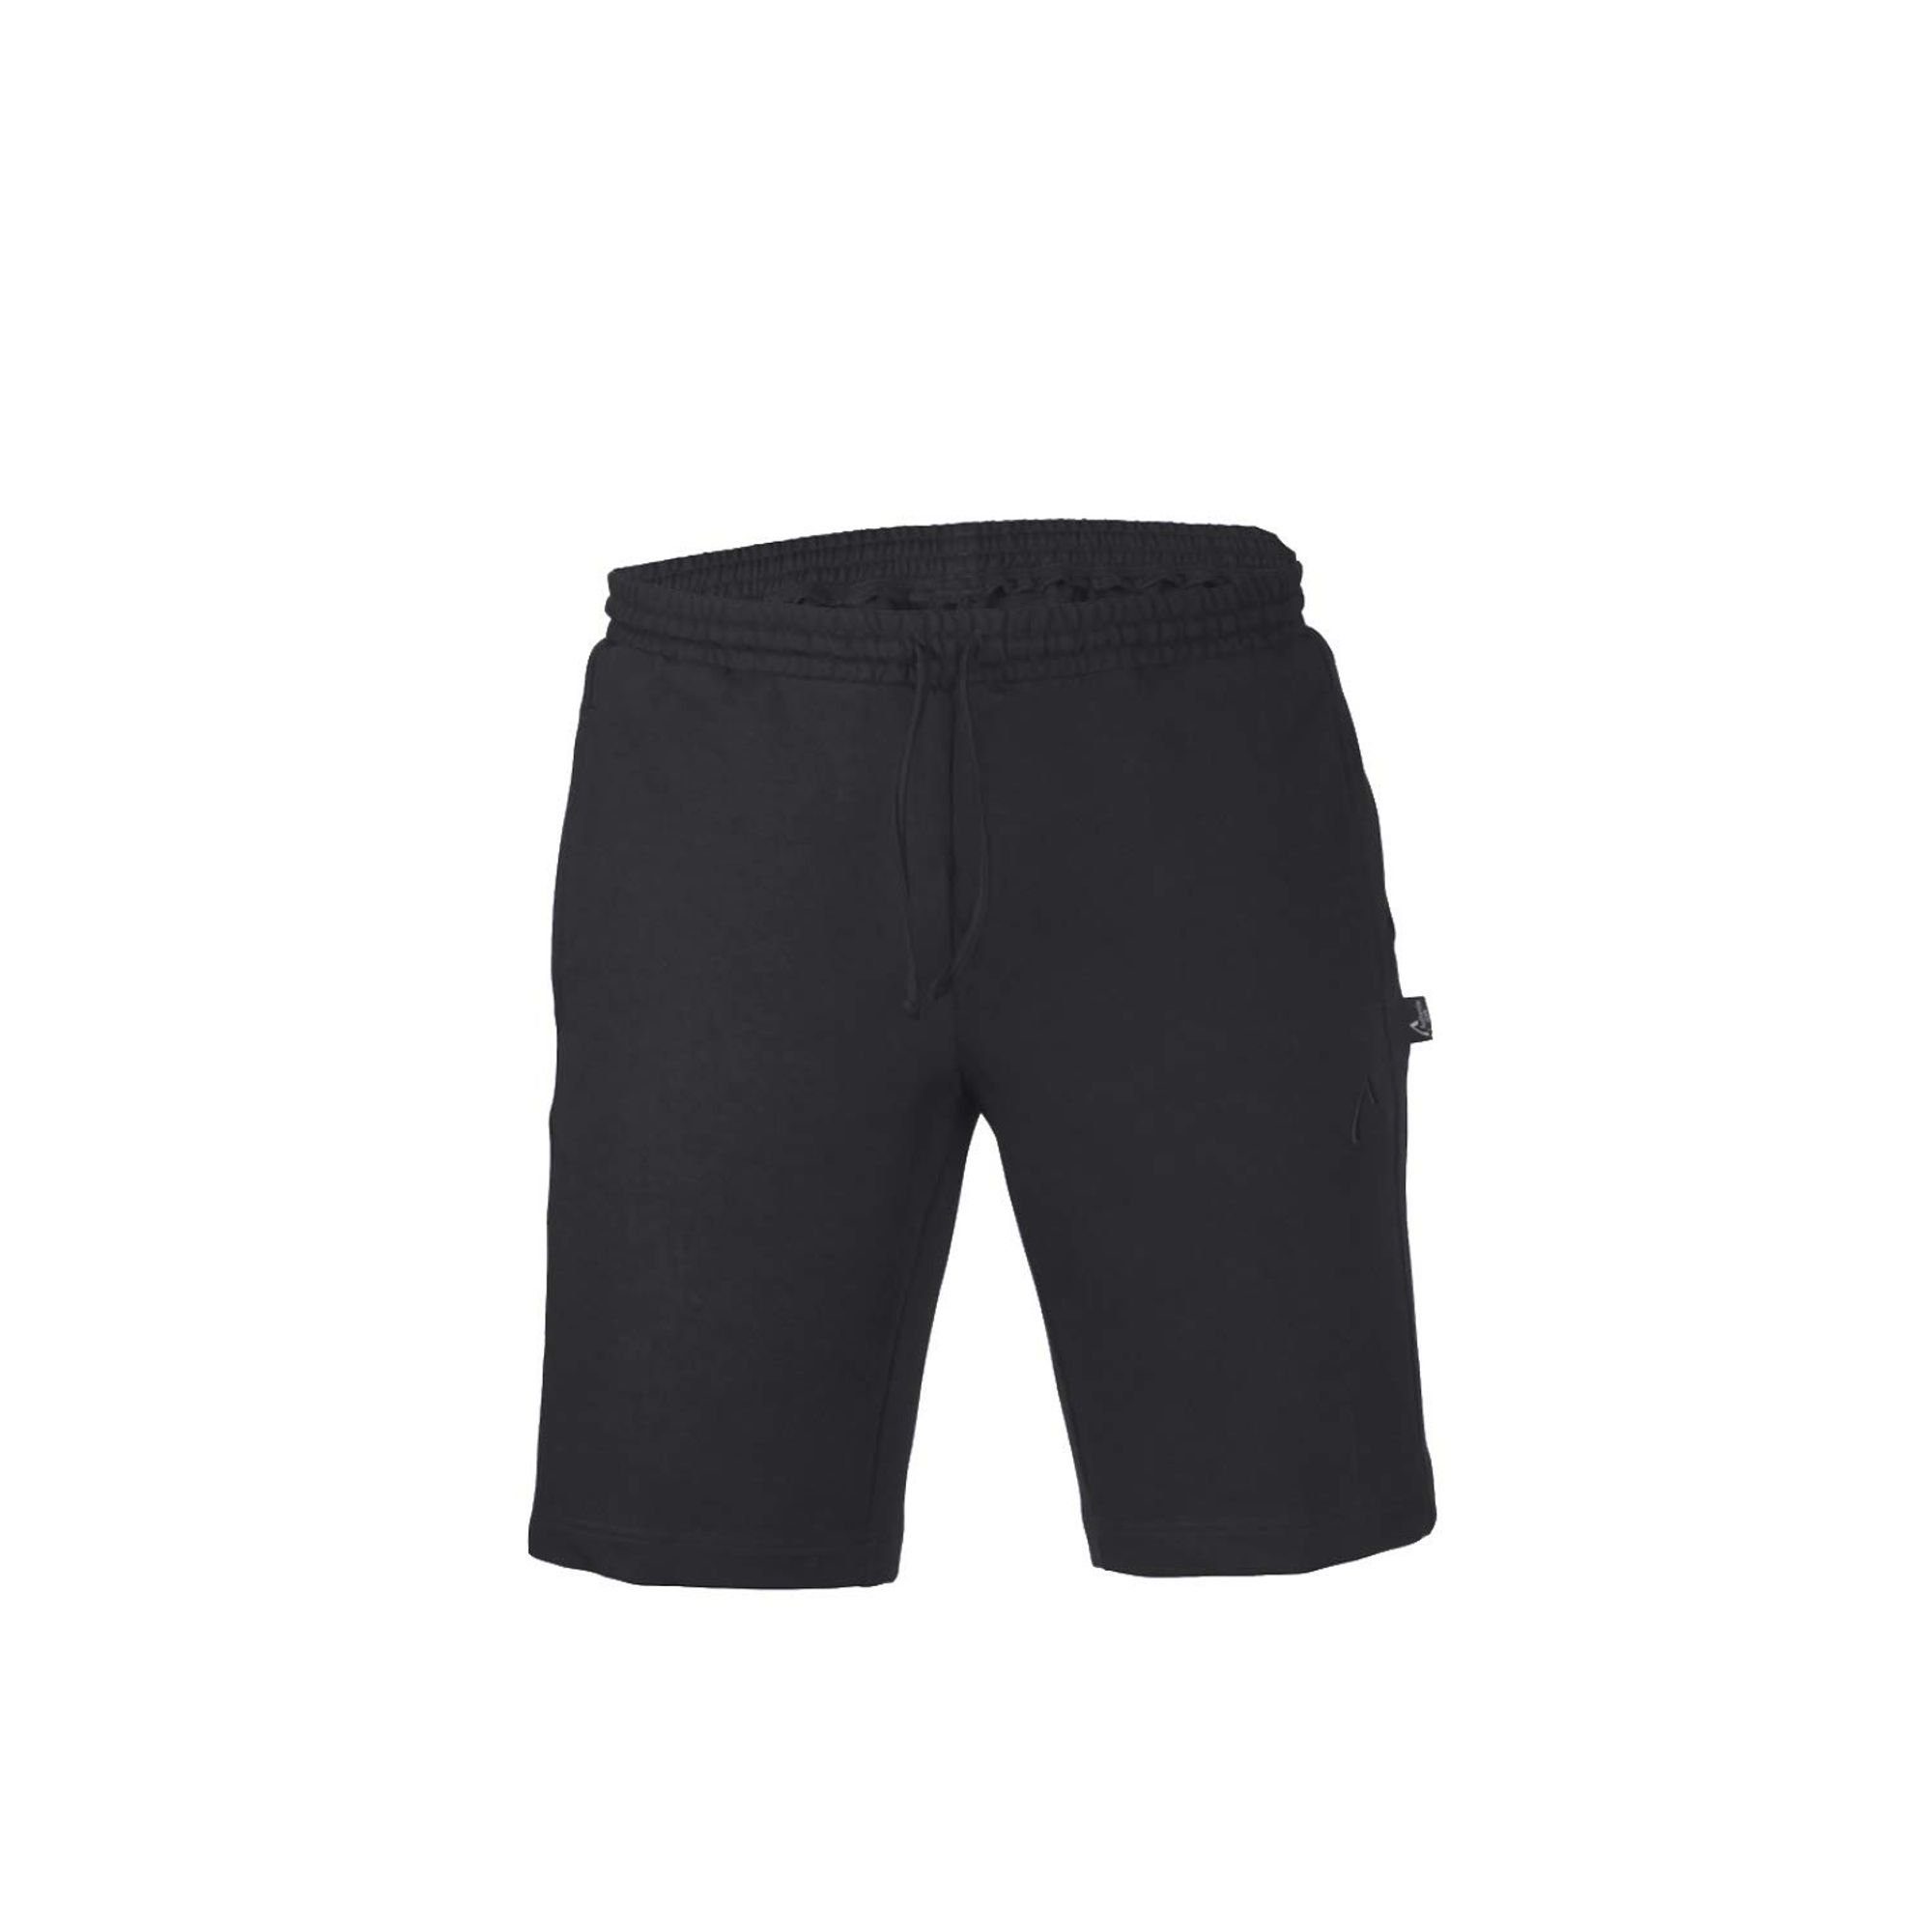 Authentic Schwarz Shorts 55110 (090) Klein